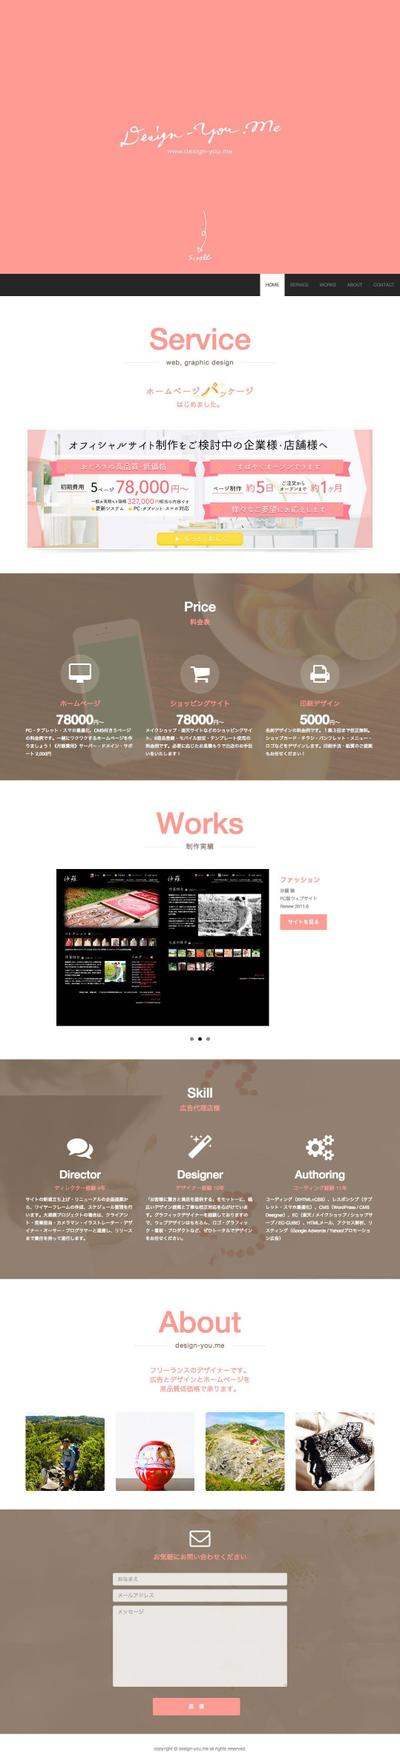 design-you.me のウェブサイト